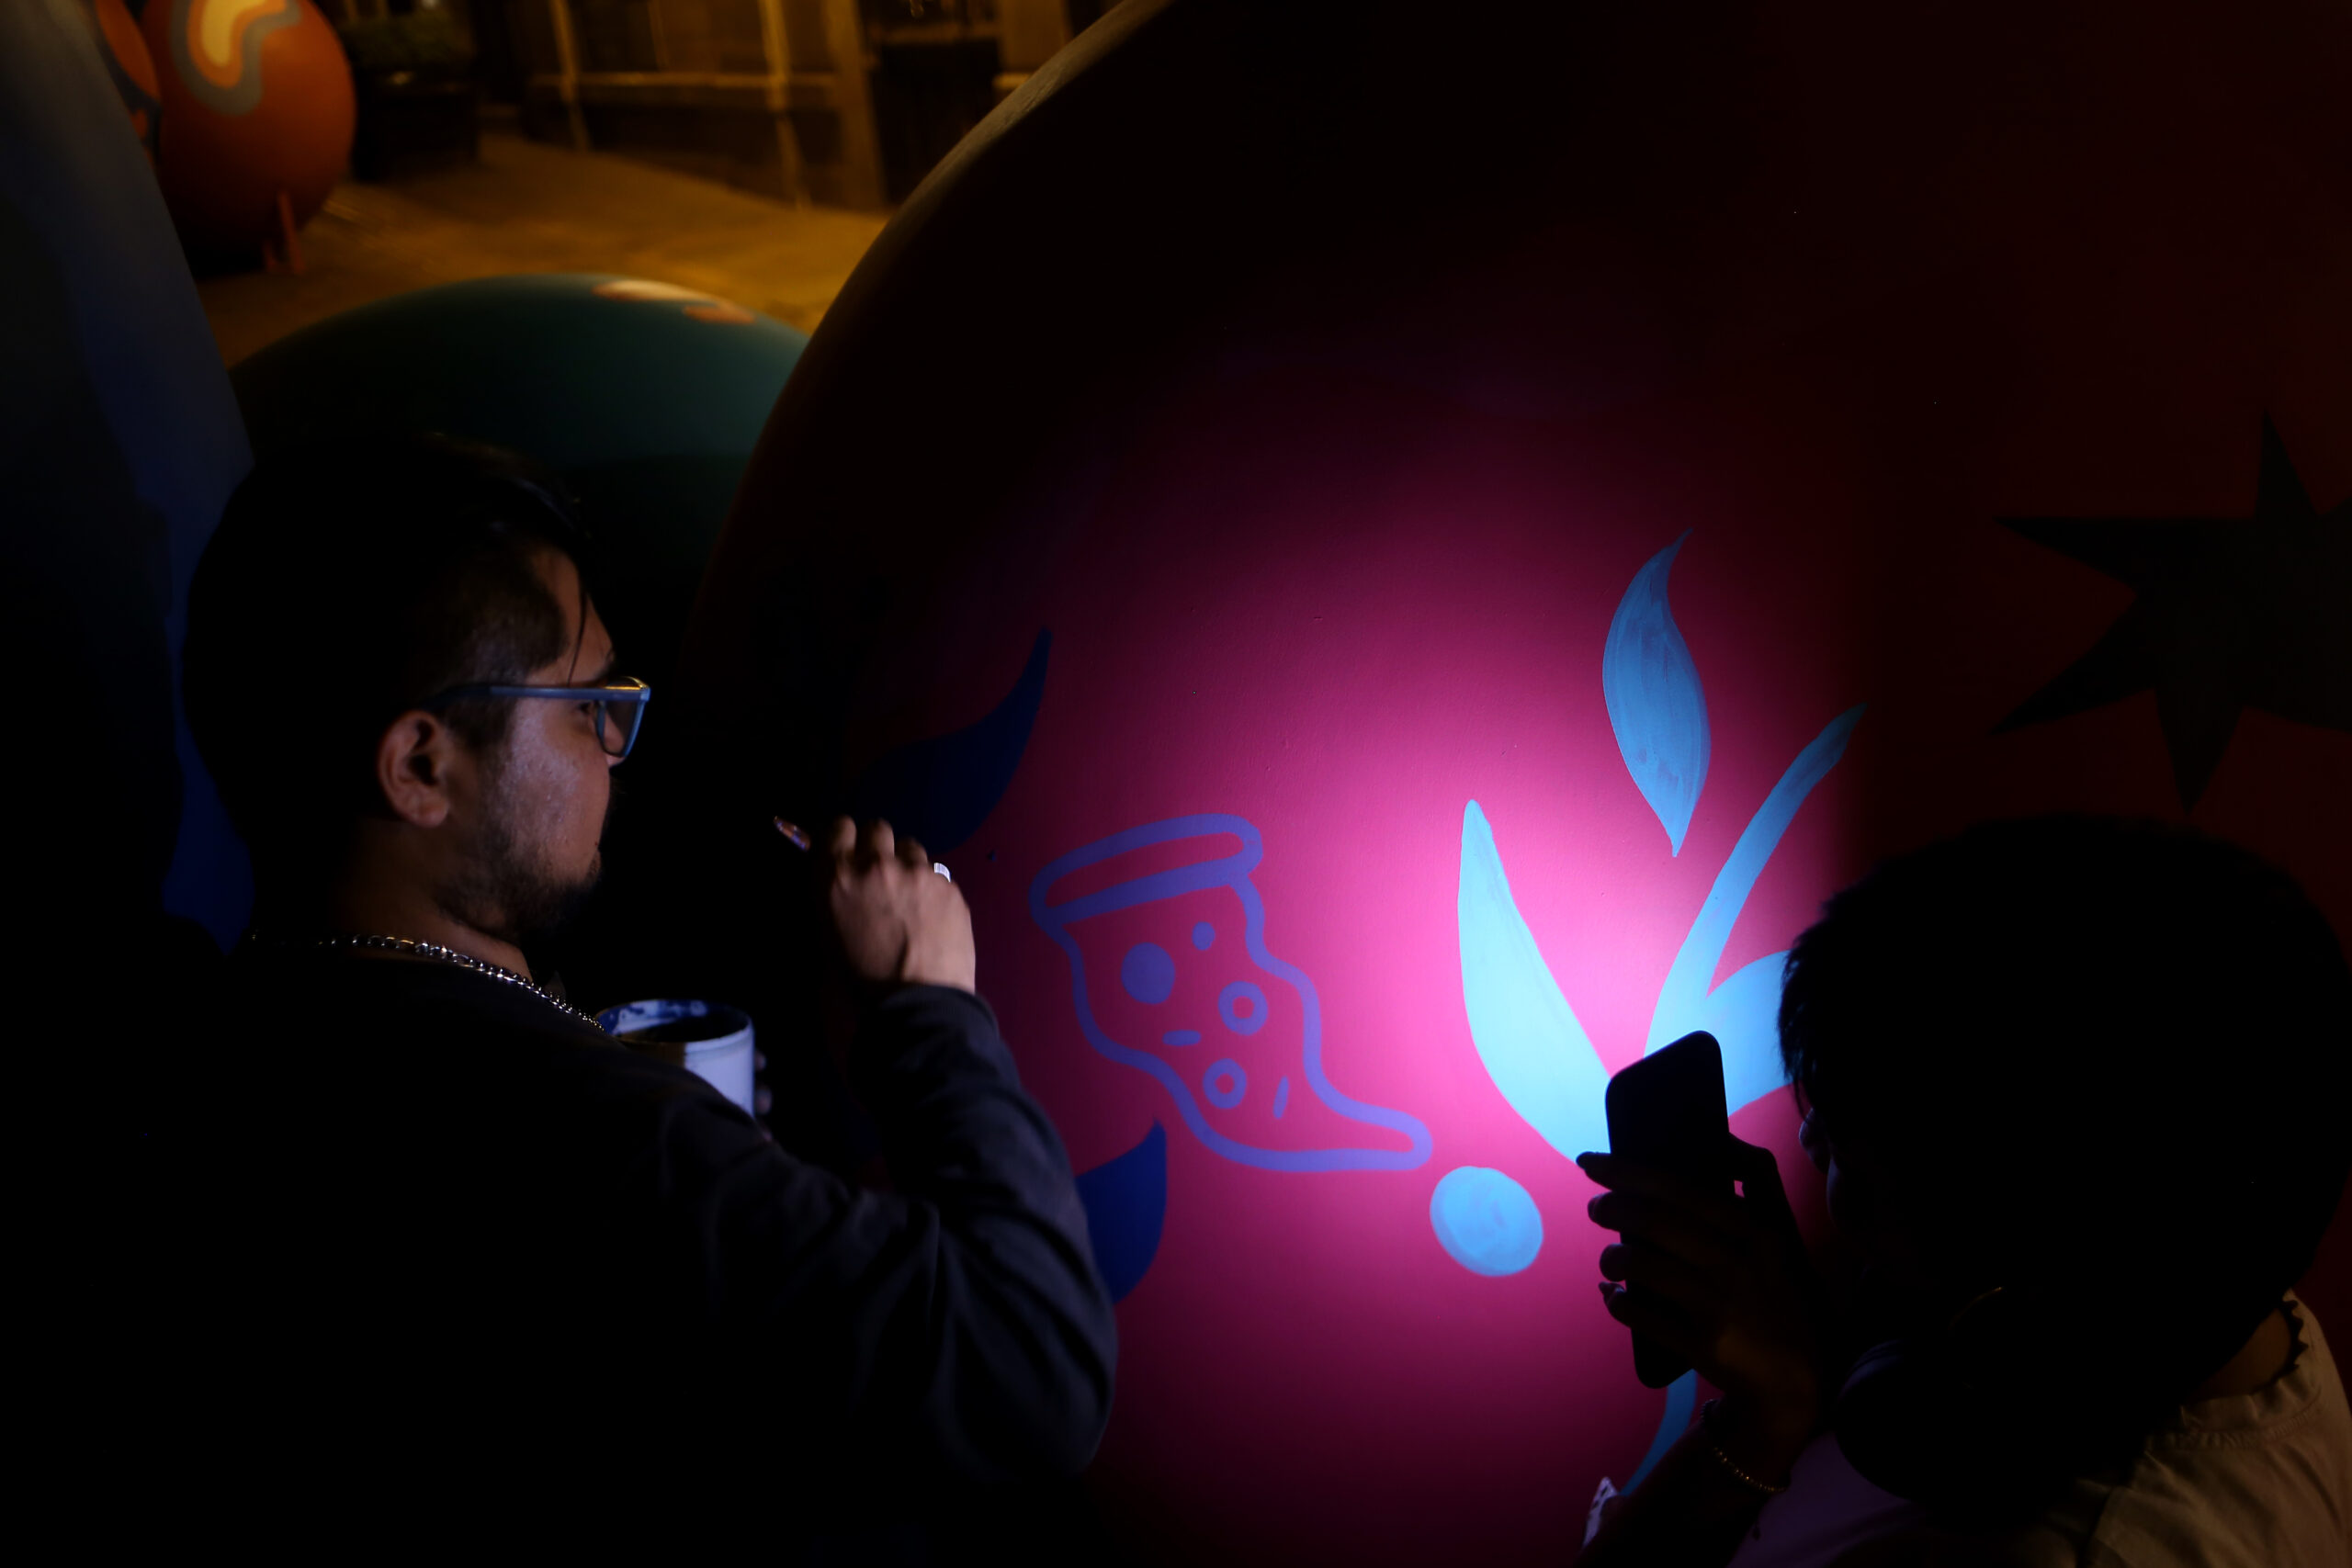 Así lucen las esferas del Querétaro Experimental tras intervención artística